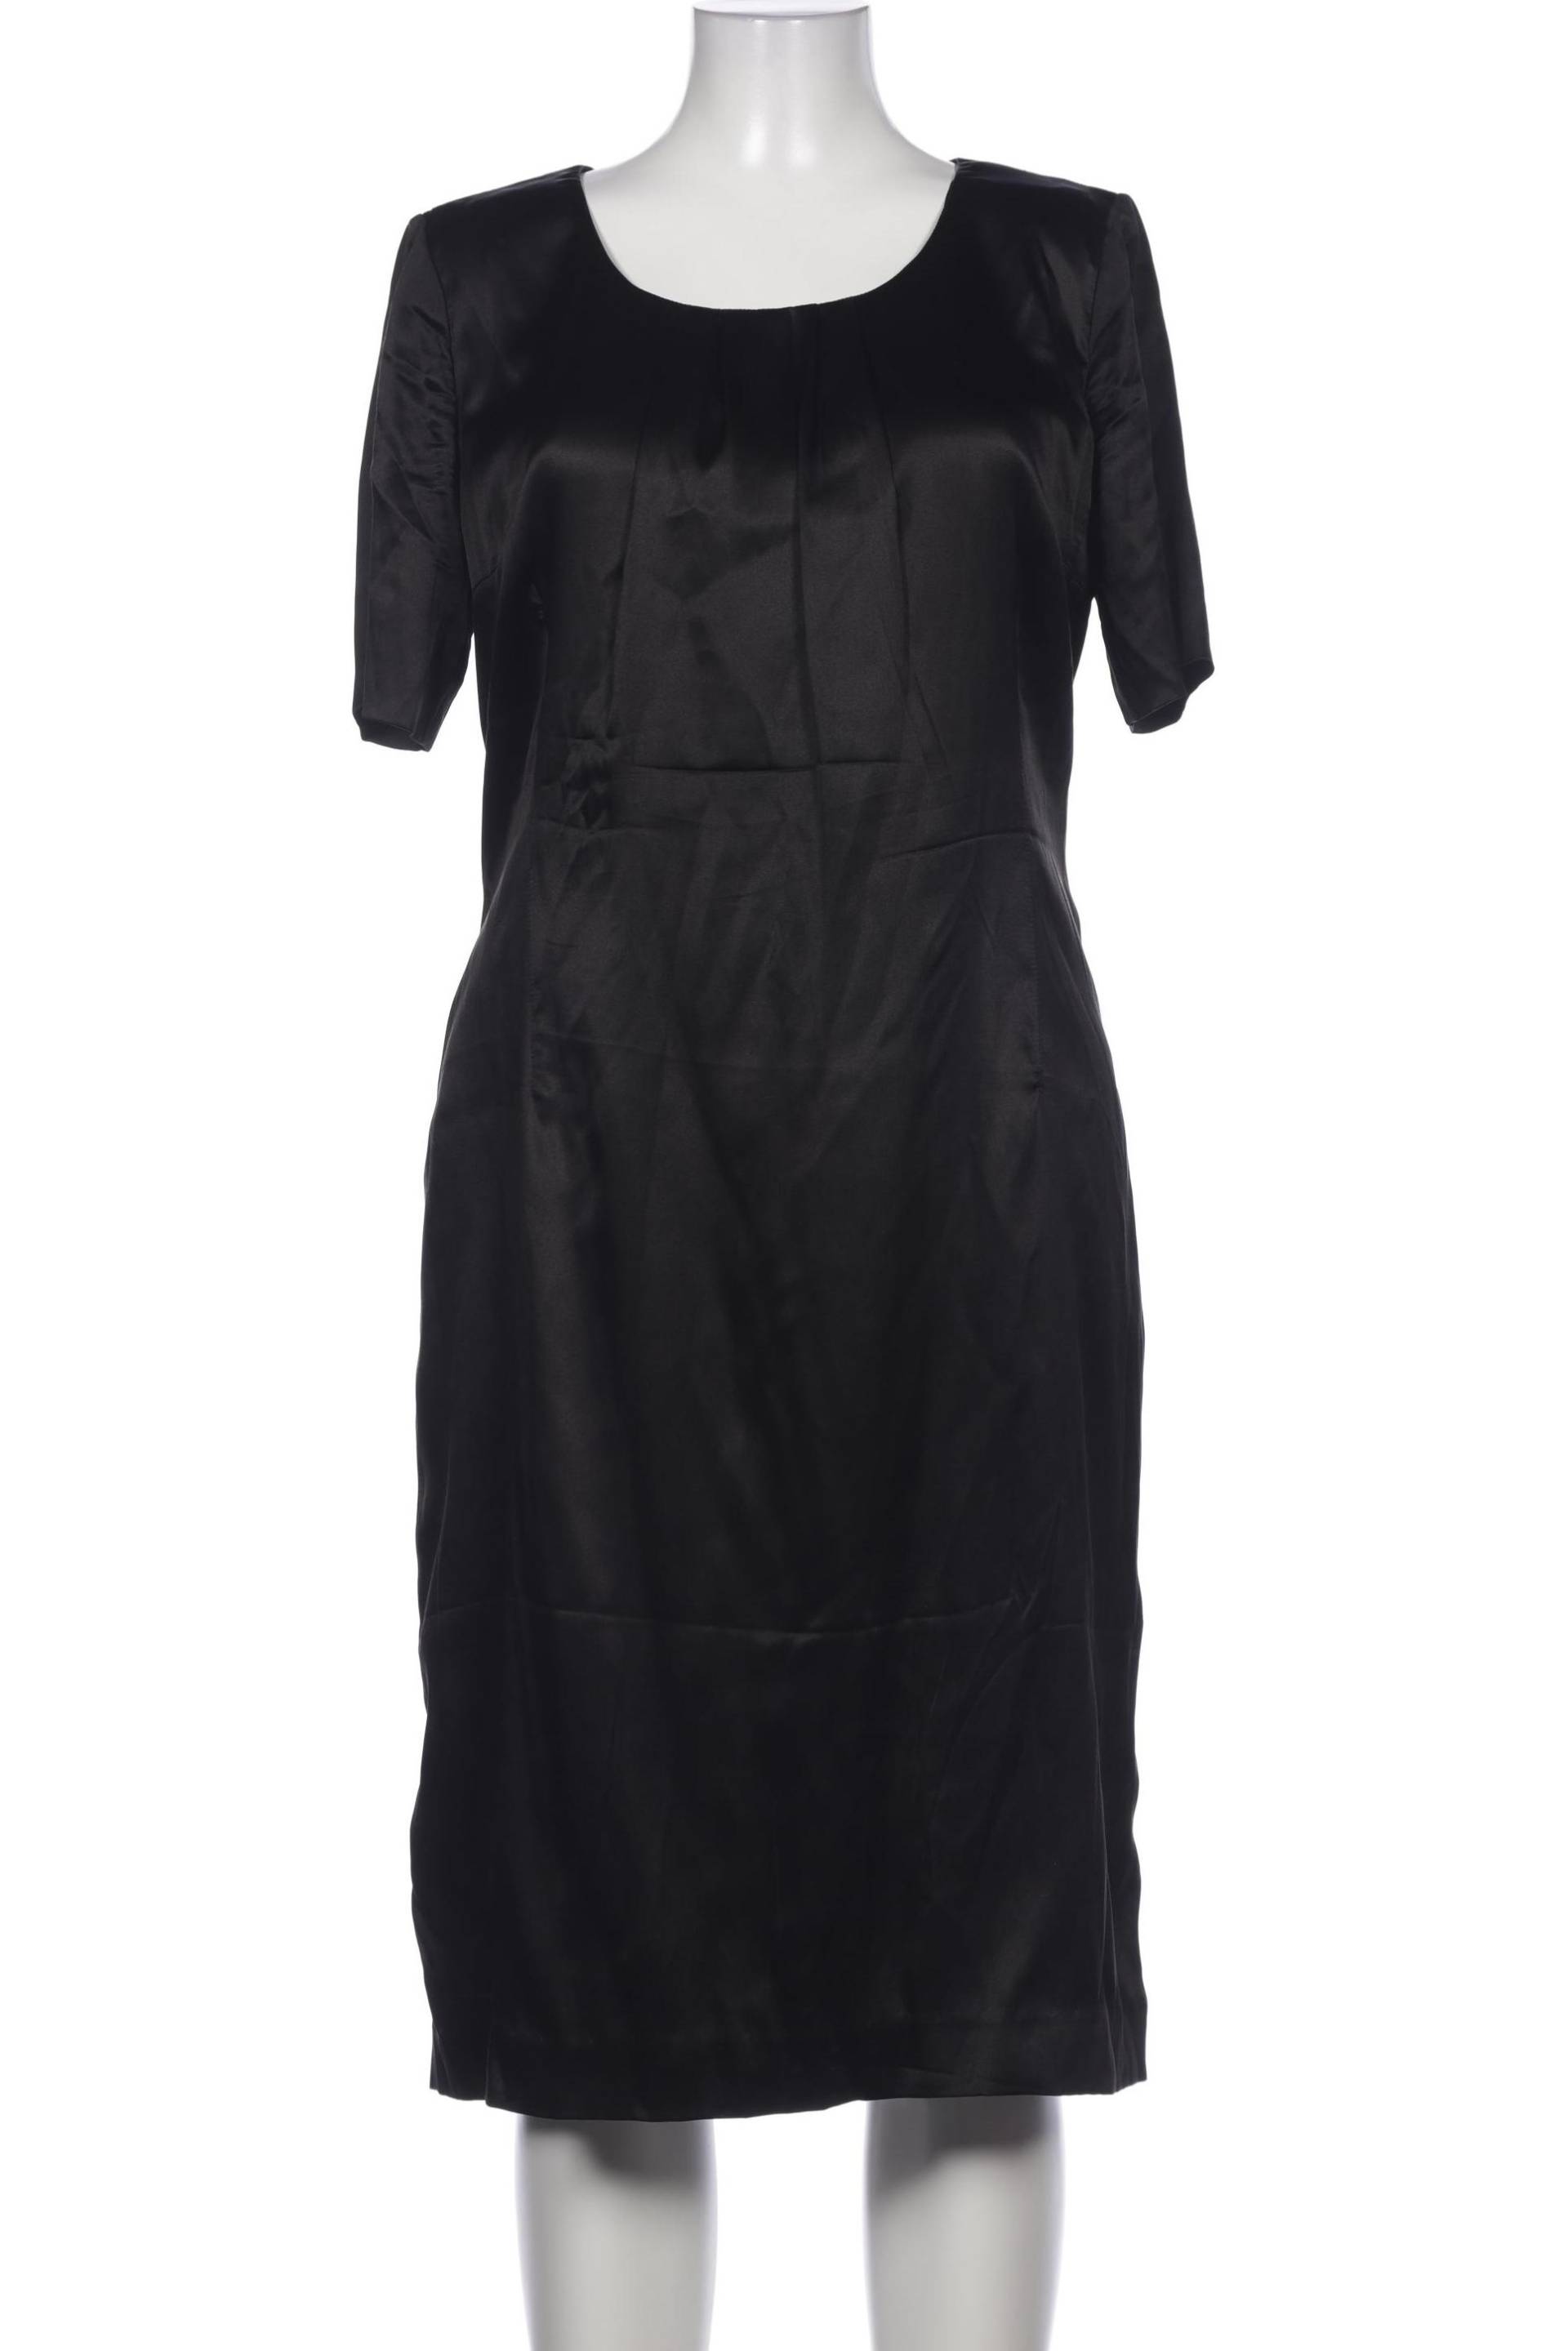 Airfield Damen Kleid, schwarz von airfield